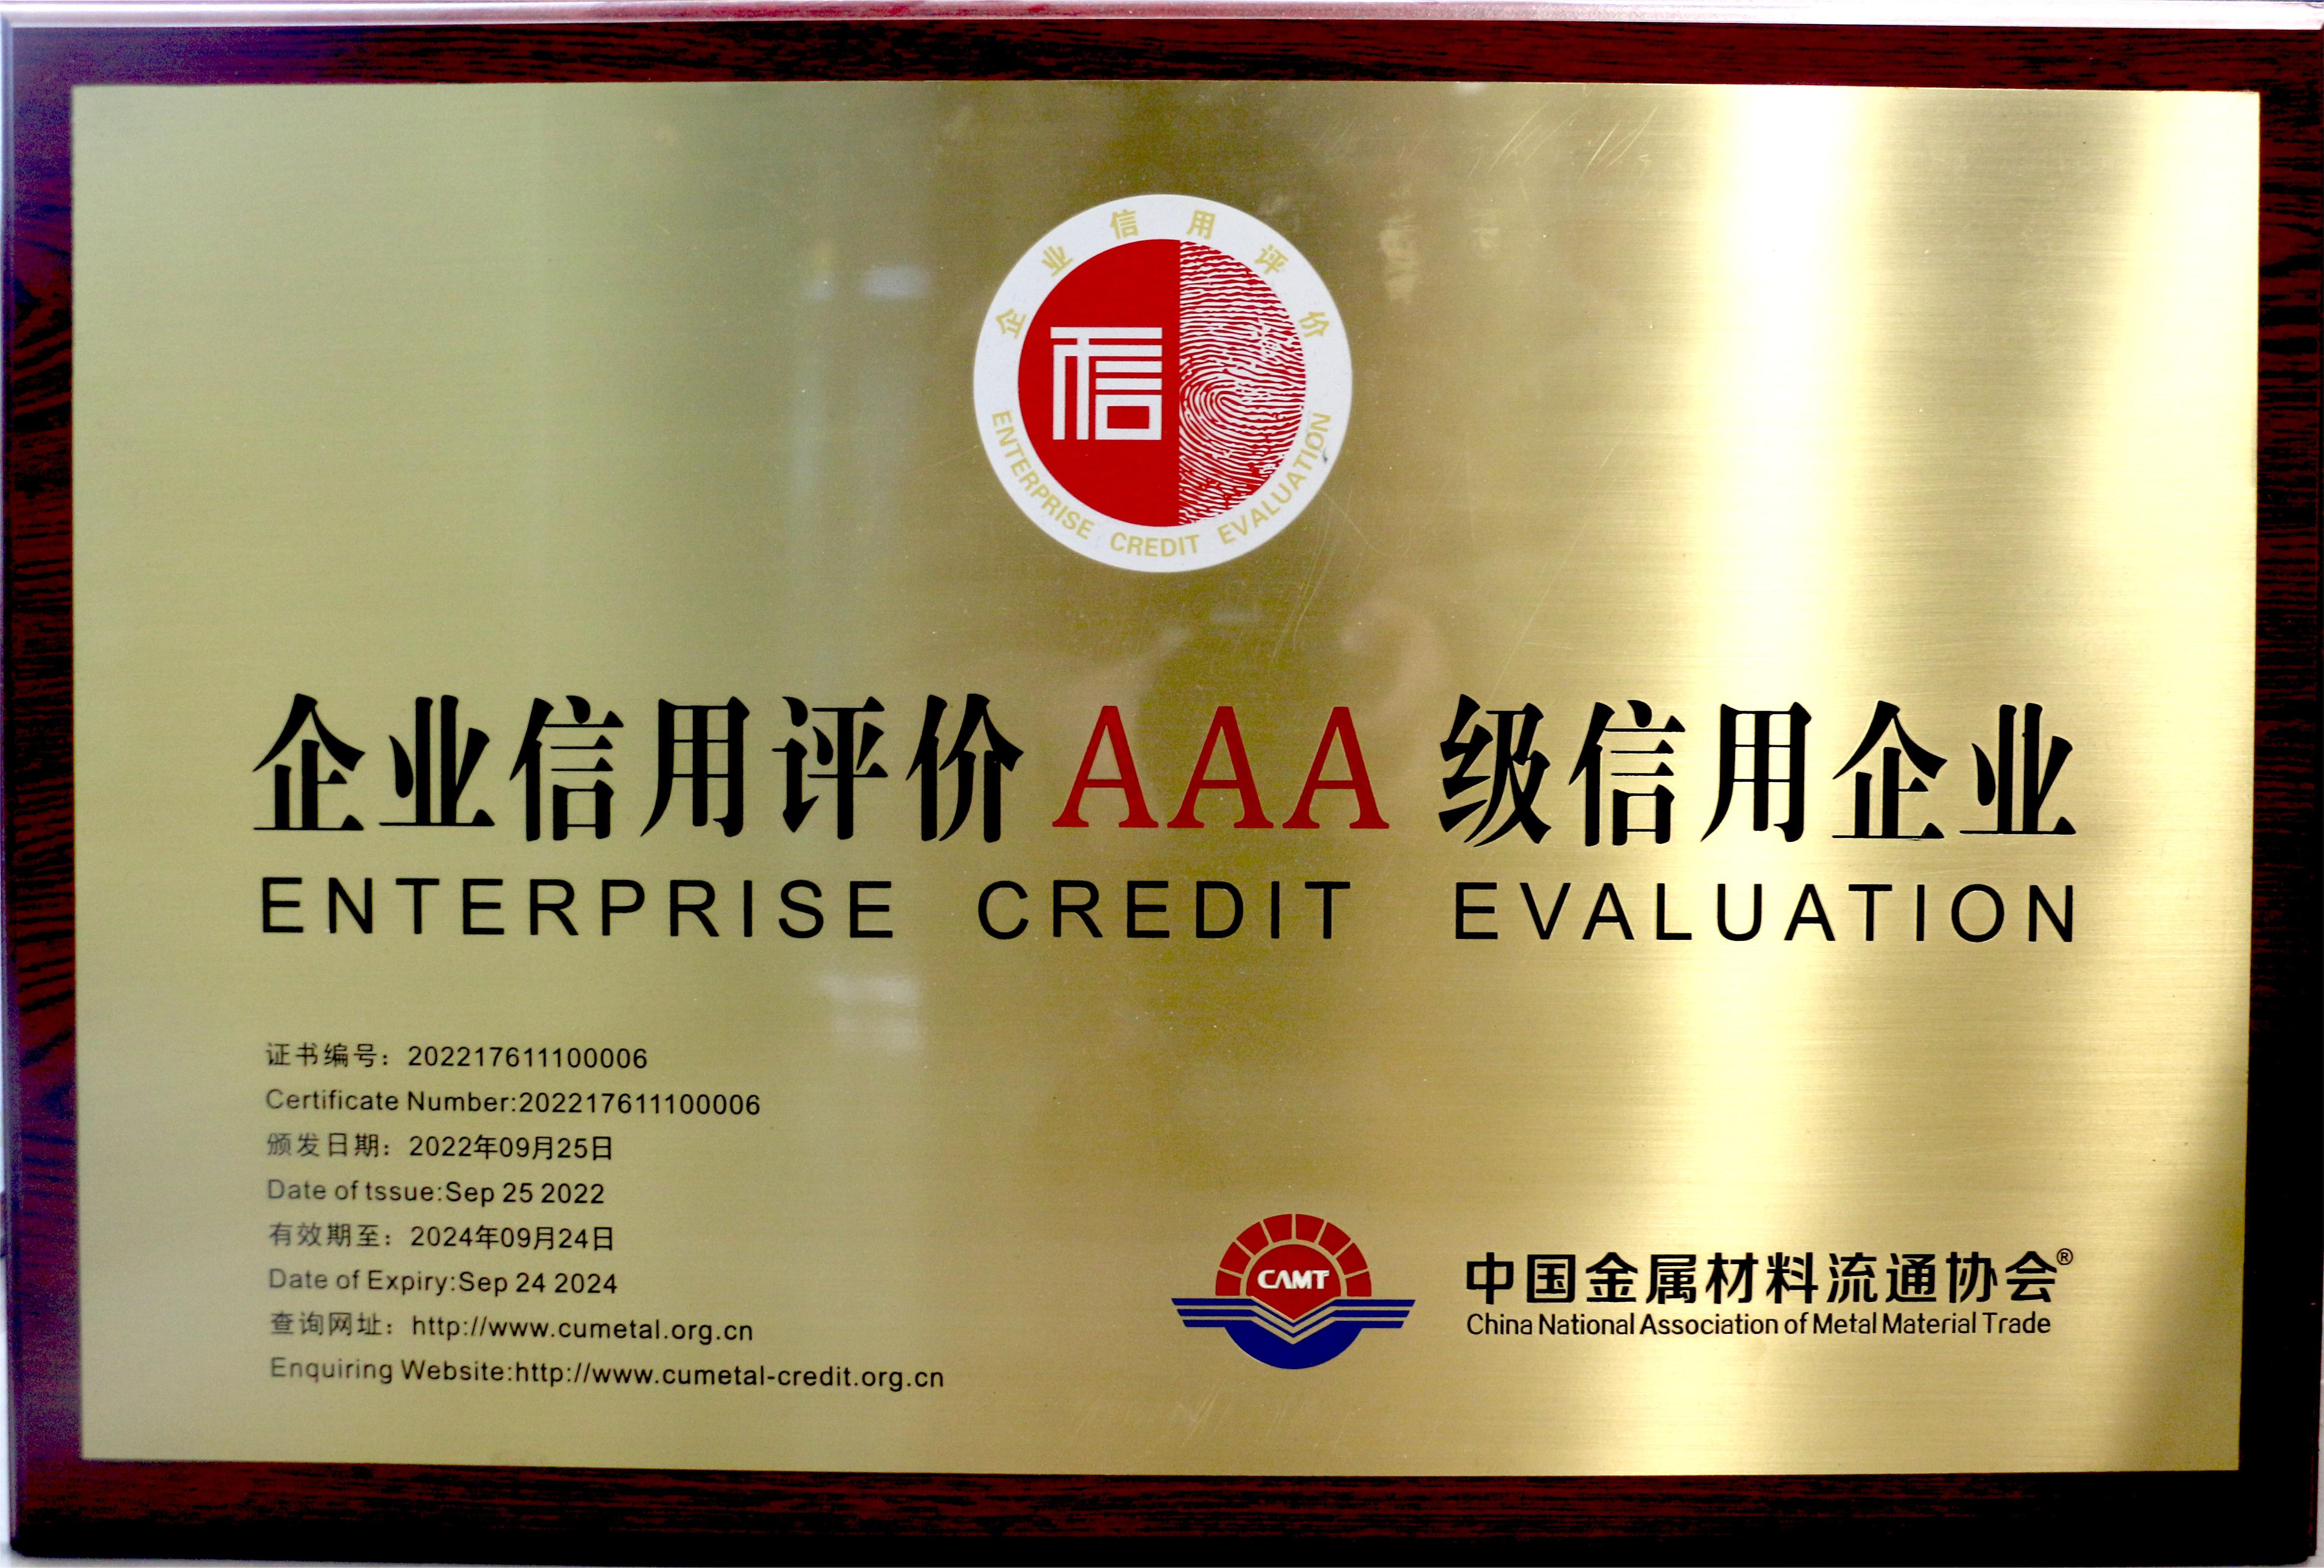 中国金属质料流通协会企业信用评价AAA级信用企业